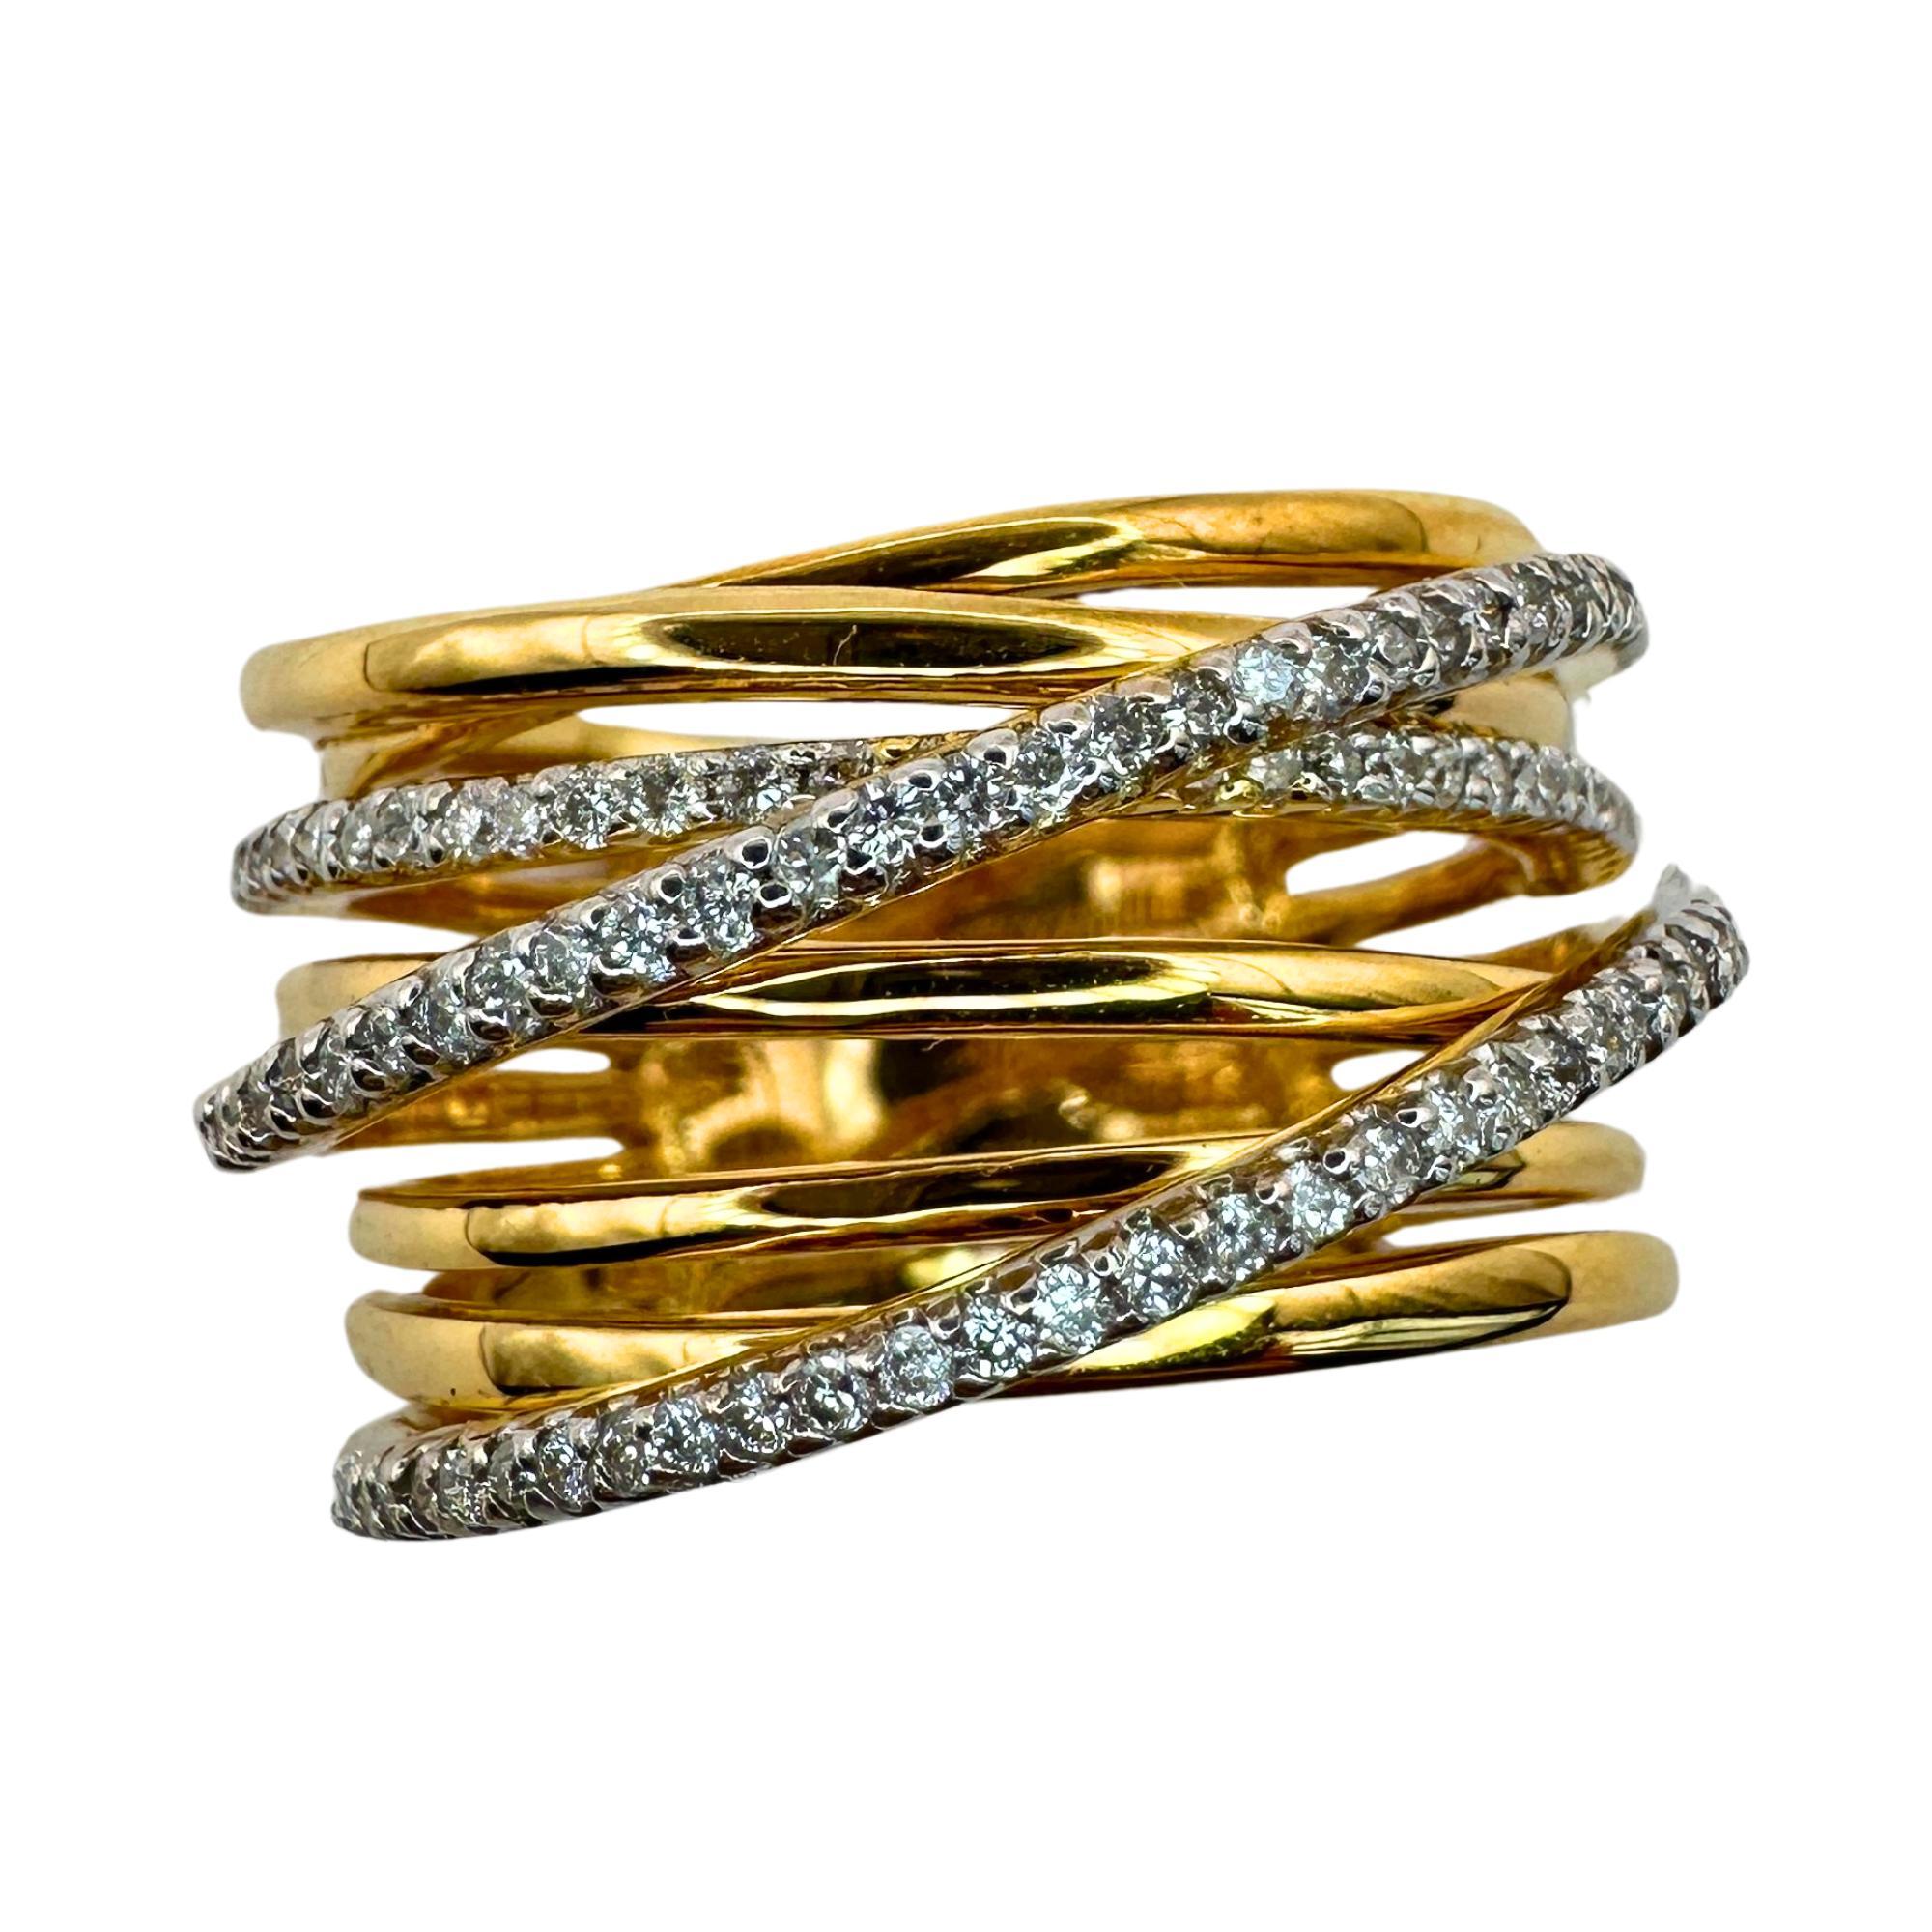 Dieser atemberaubende Ring aus 18 Karat Gelbgold zeichnet sich durch ein breites Band aus, das einen einzigartigen und auffälligen Look erzeugt. Der Crossover-Stil verleiht ihm einen Hauch von Eleganz und die 0,46 Karat Diamanten sorgen für einen